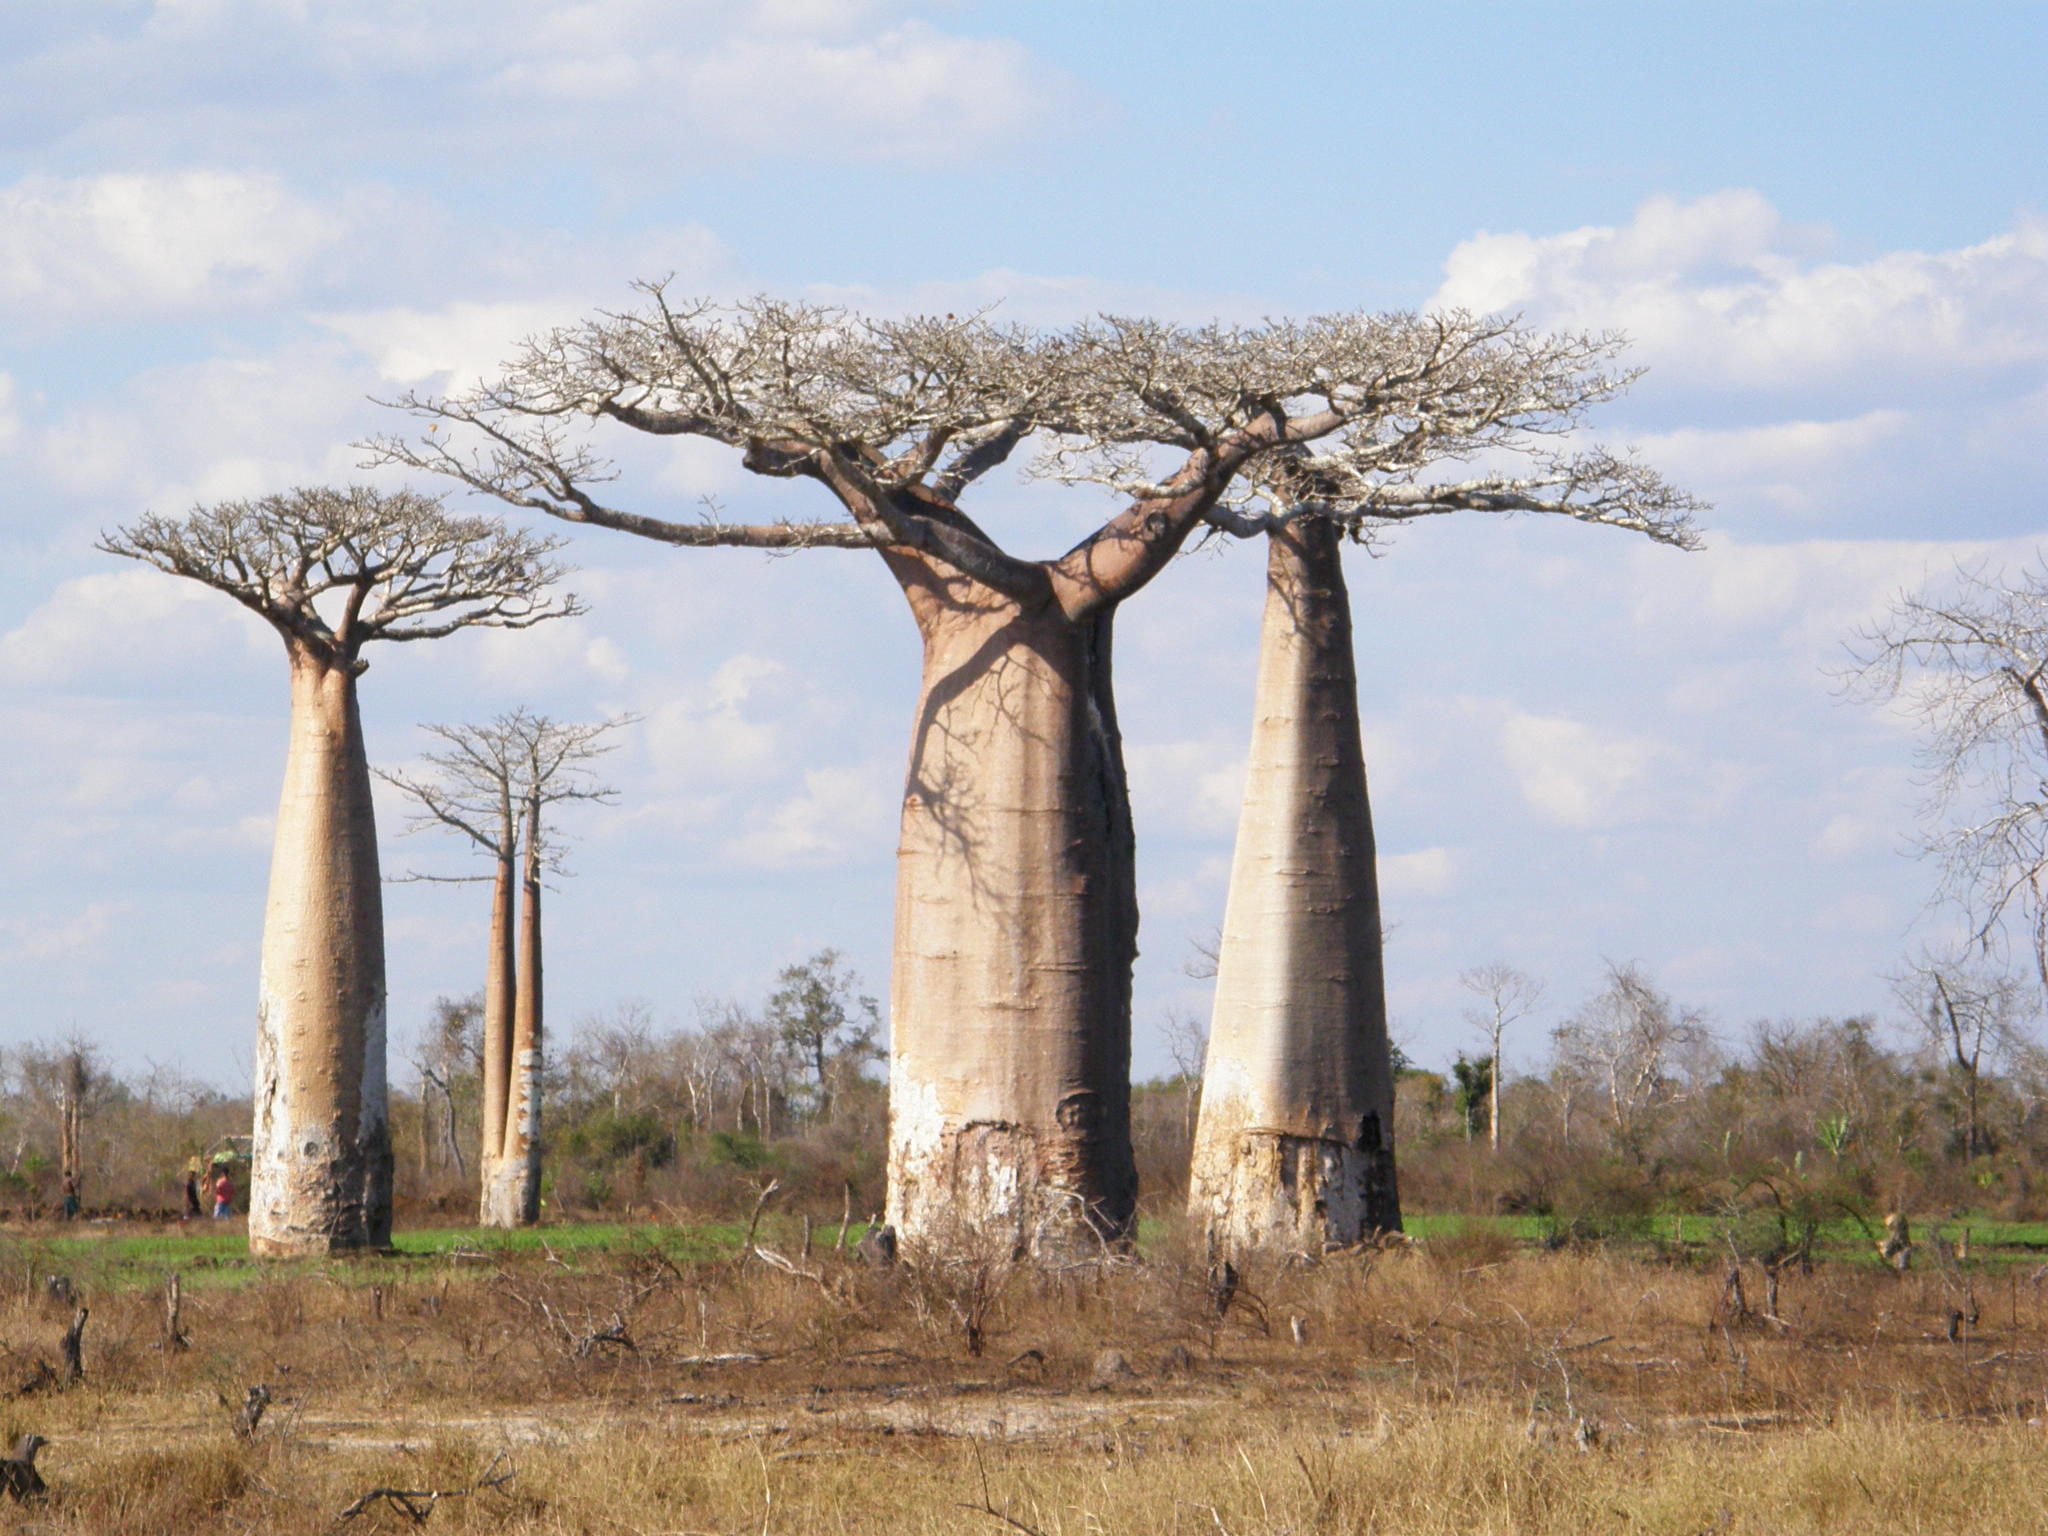 Ба баб. Баобаб дерево. Баобаб Адансония Грандидье. Баобаб Африканский Ботаническая. Баобаб (Адансония пальчатая.